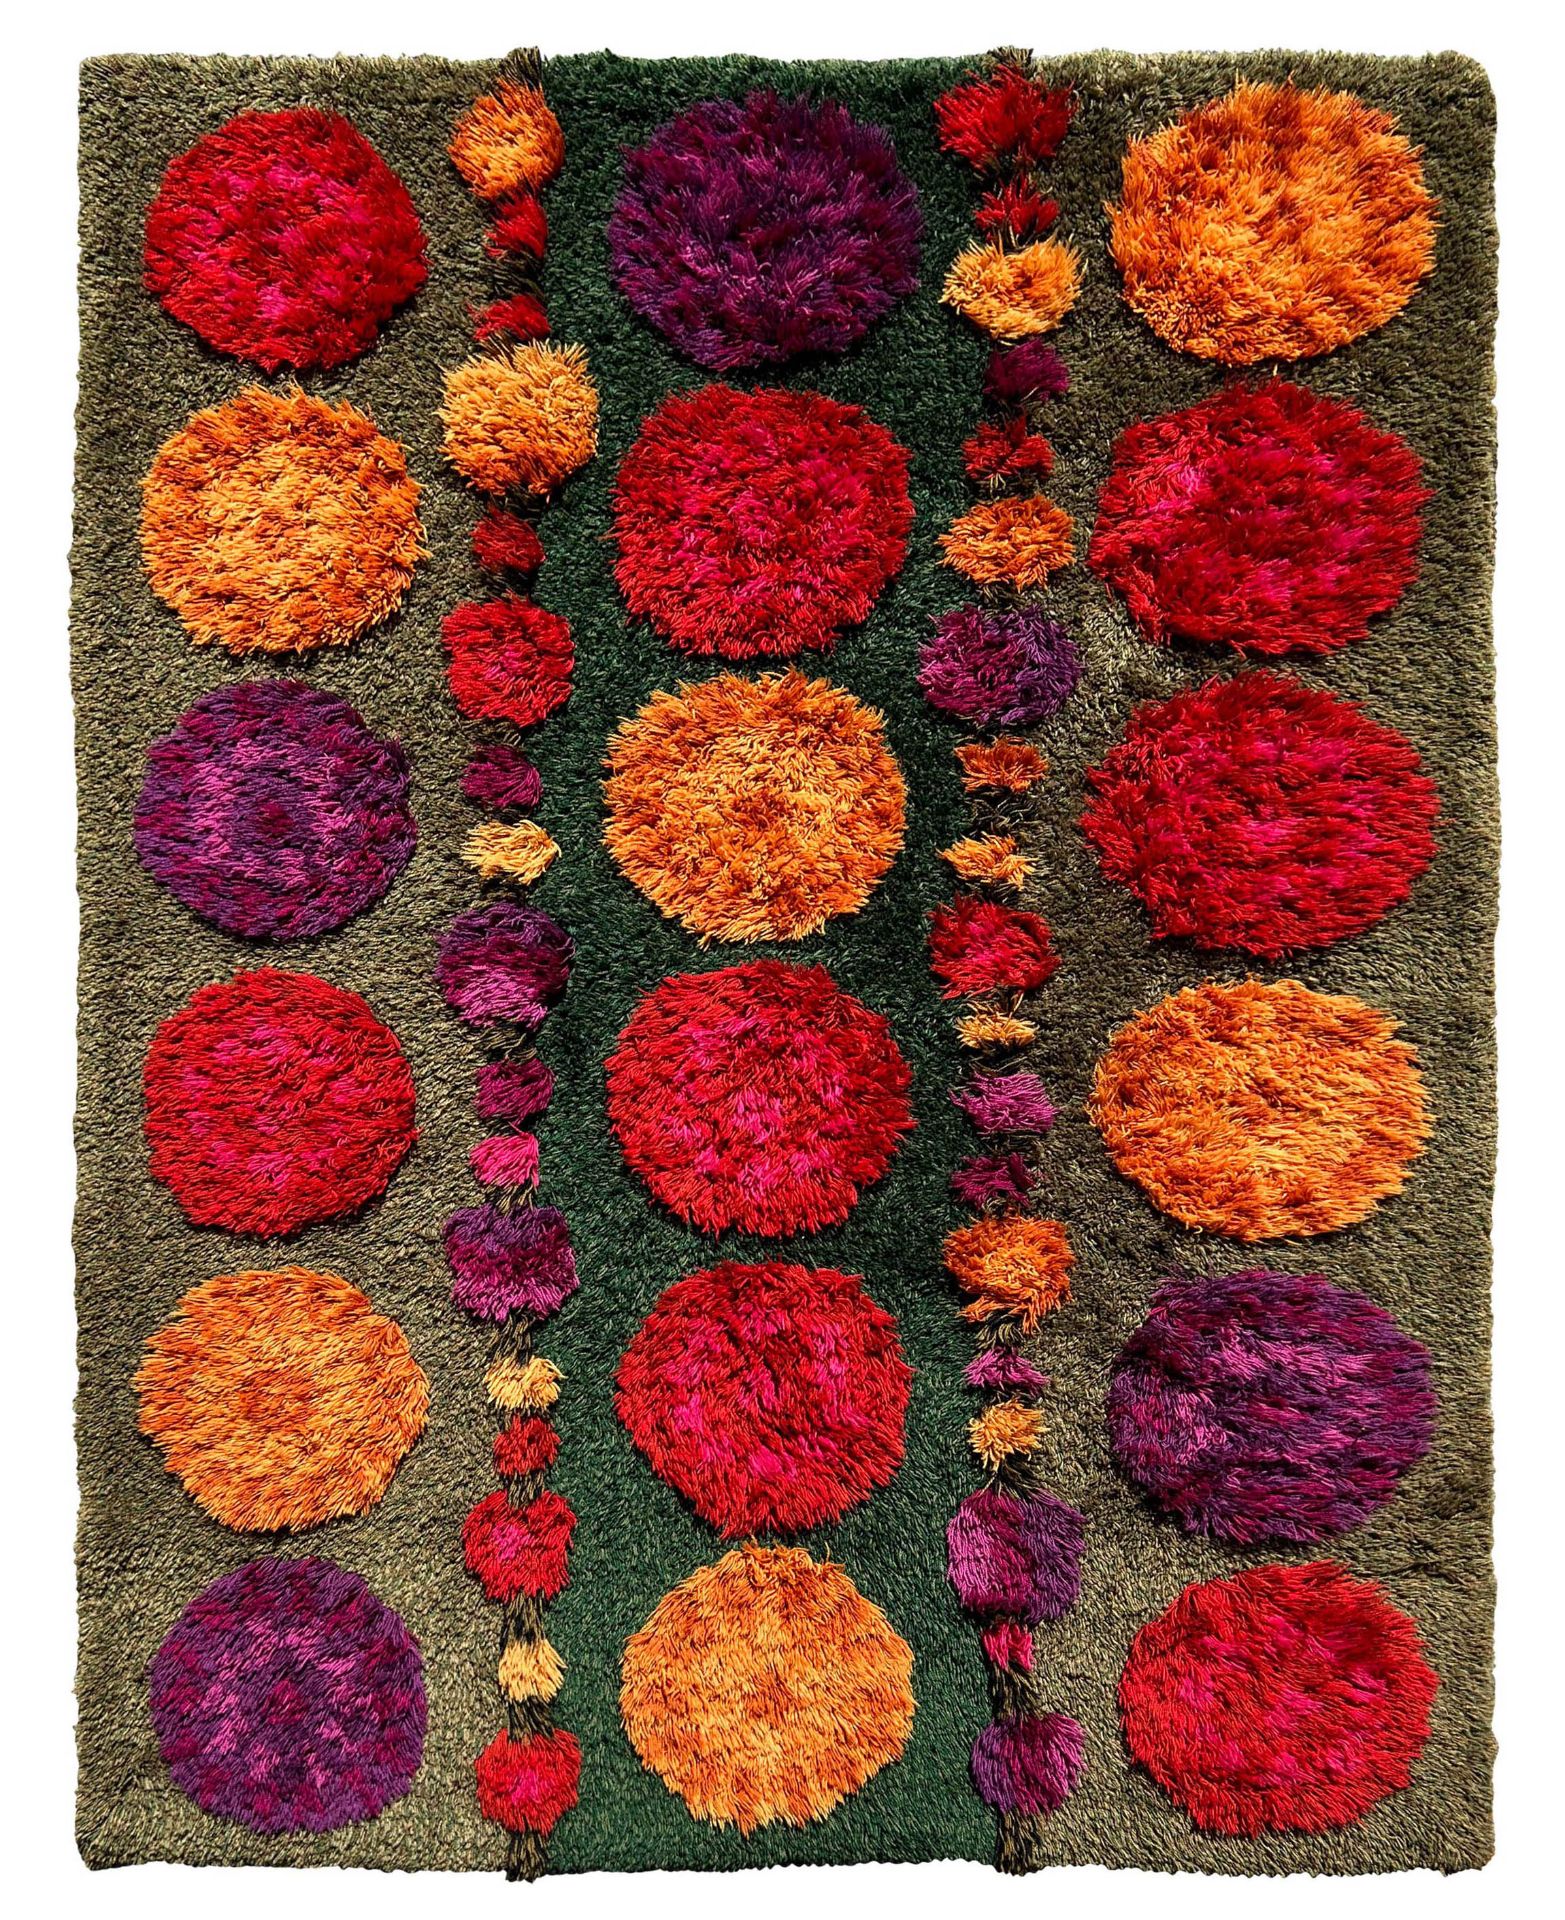 Colourful design carpet. Flower power. 1960s/1970s.